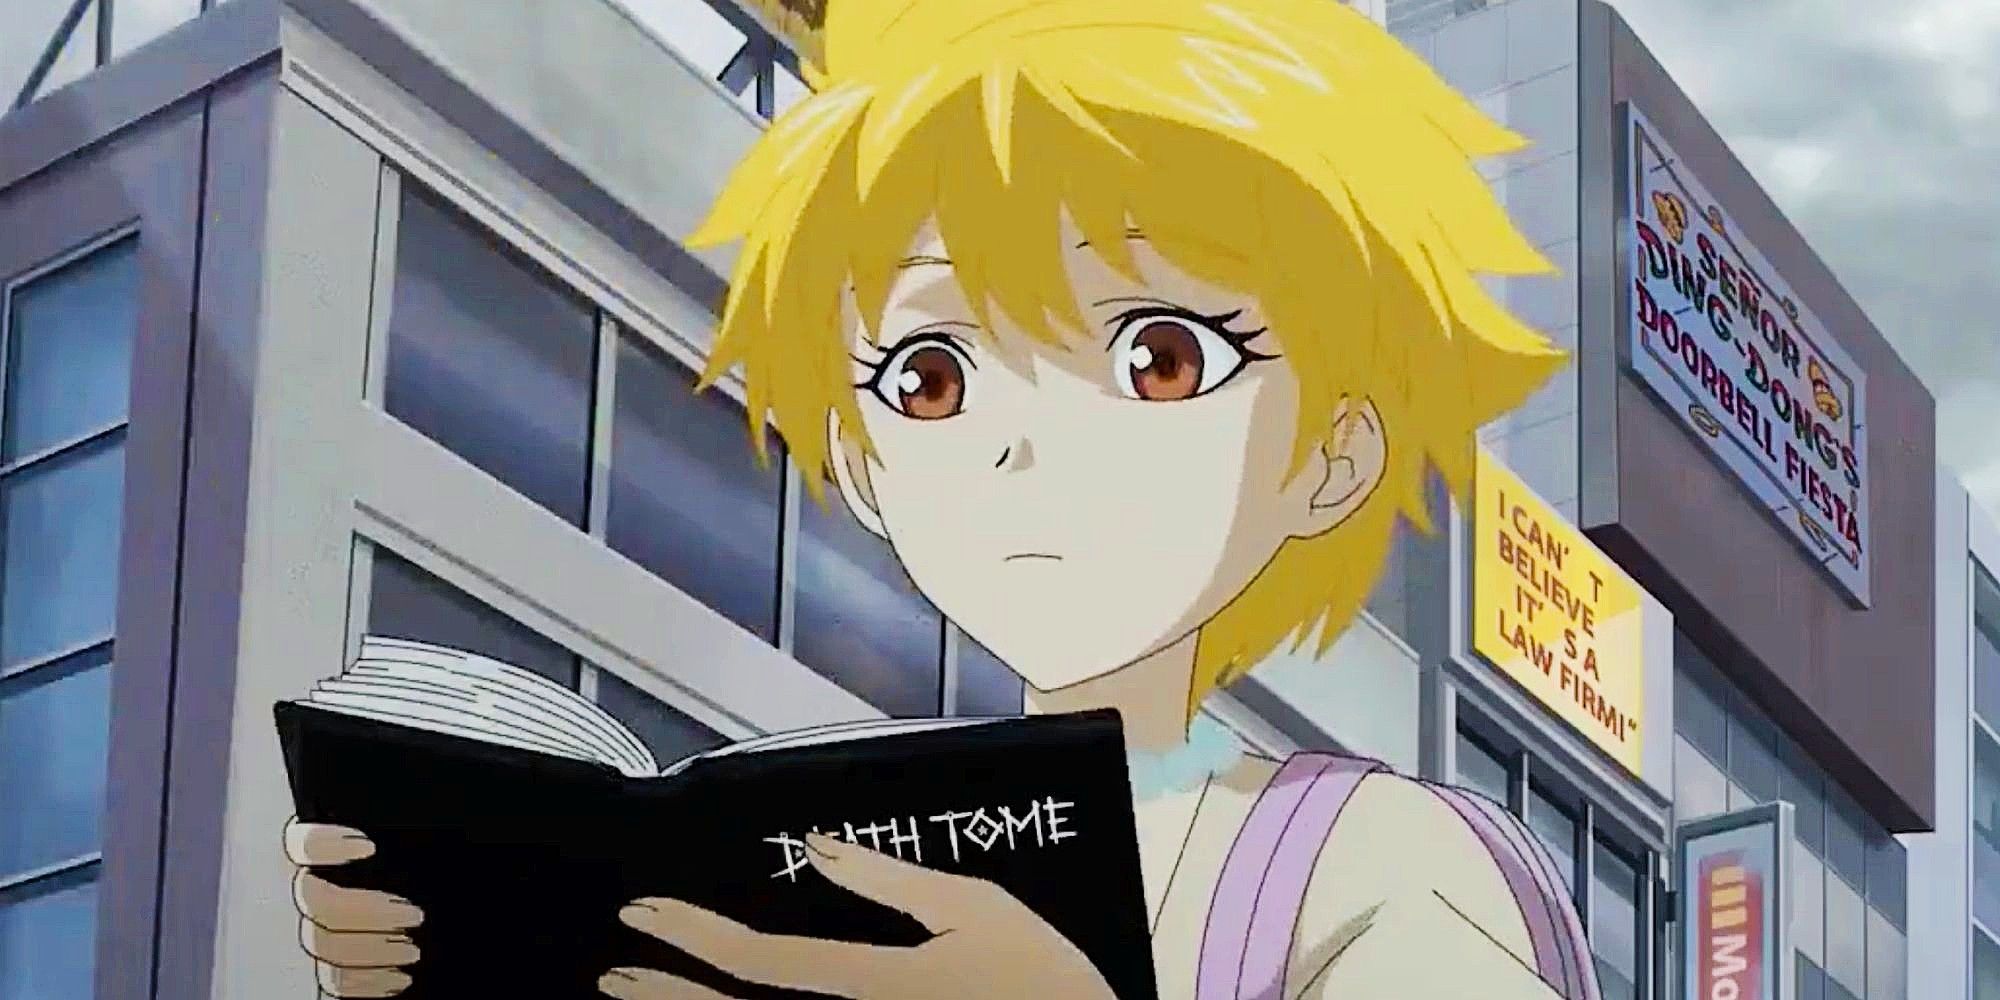 Se revela la fecha de lanzamiento de la transmisión de la temporada 34 de Los Simpson con una referencia histérica al anime Death Note